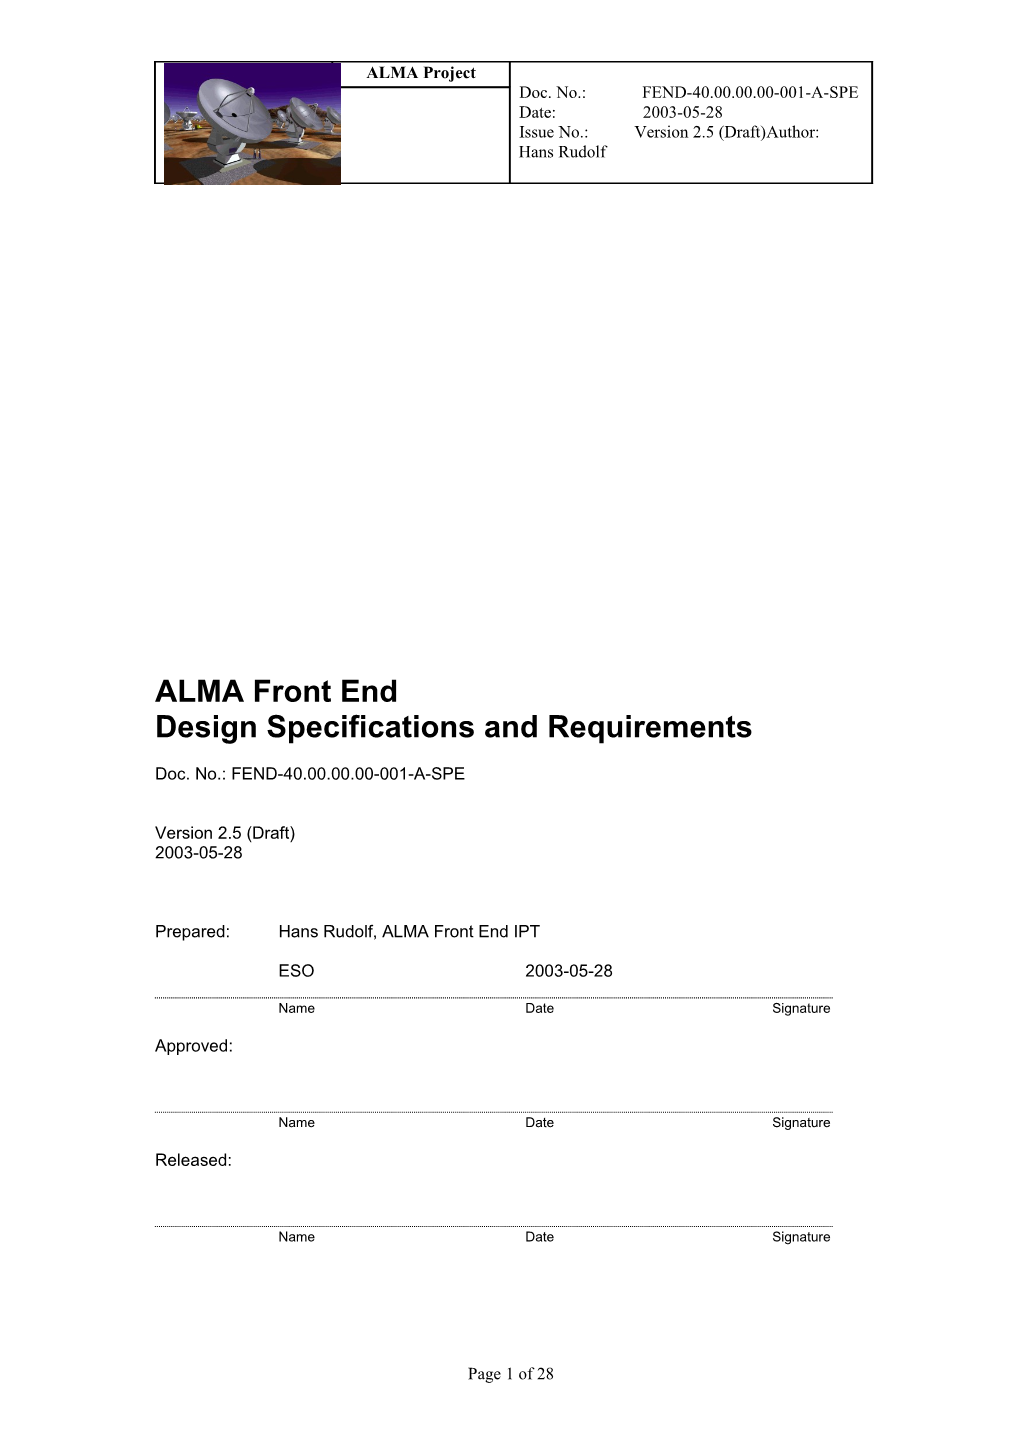 ALMA Development, Integration & Production Process Description